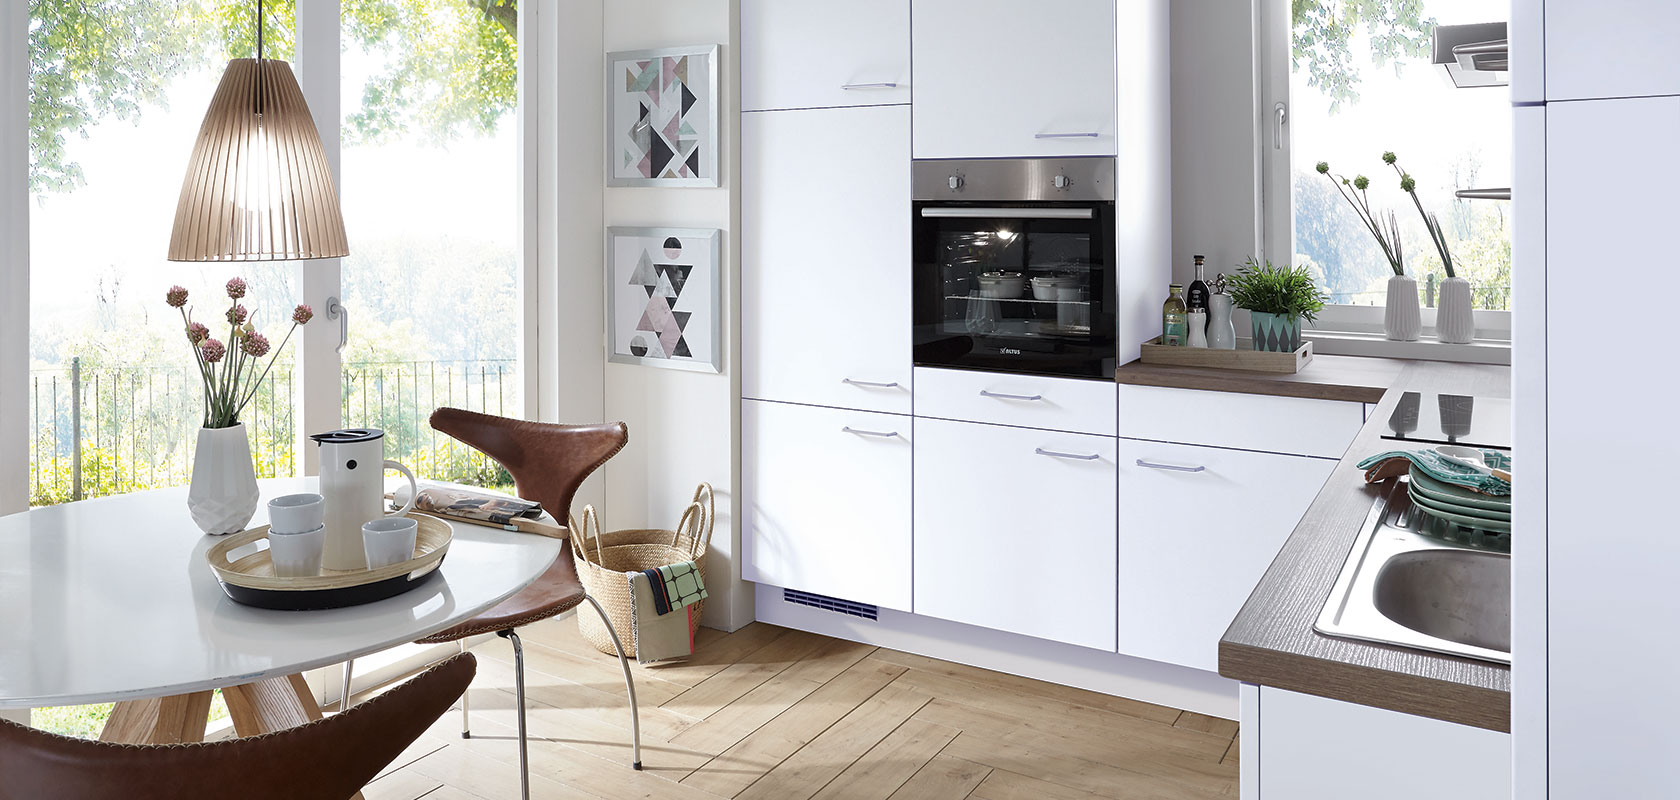 Intérieur de cuisine lumineux et moderne avec des armoires blanches propres, des appareils intégrés et un coin repas confortable avec une table ronde donnant sur une vue ensoleillée du jardin.